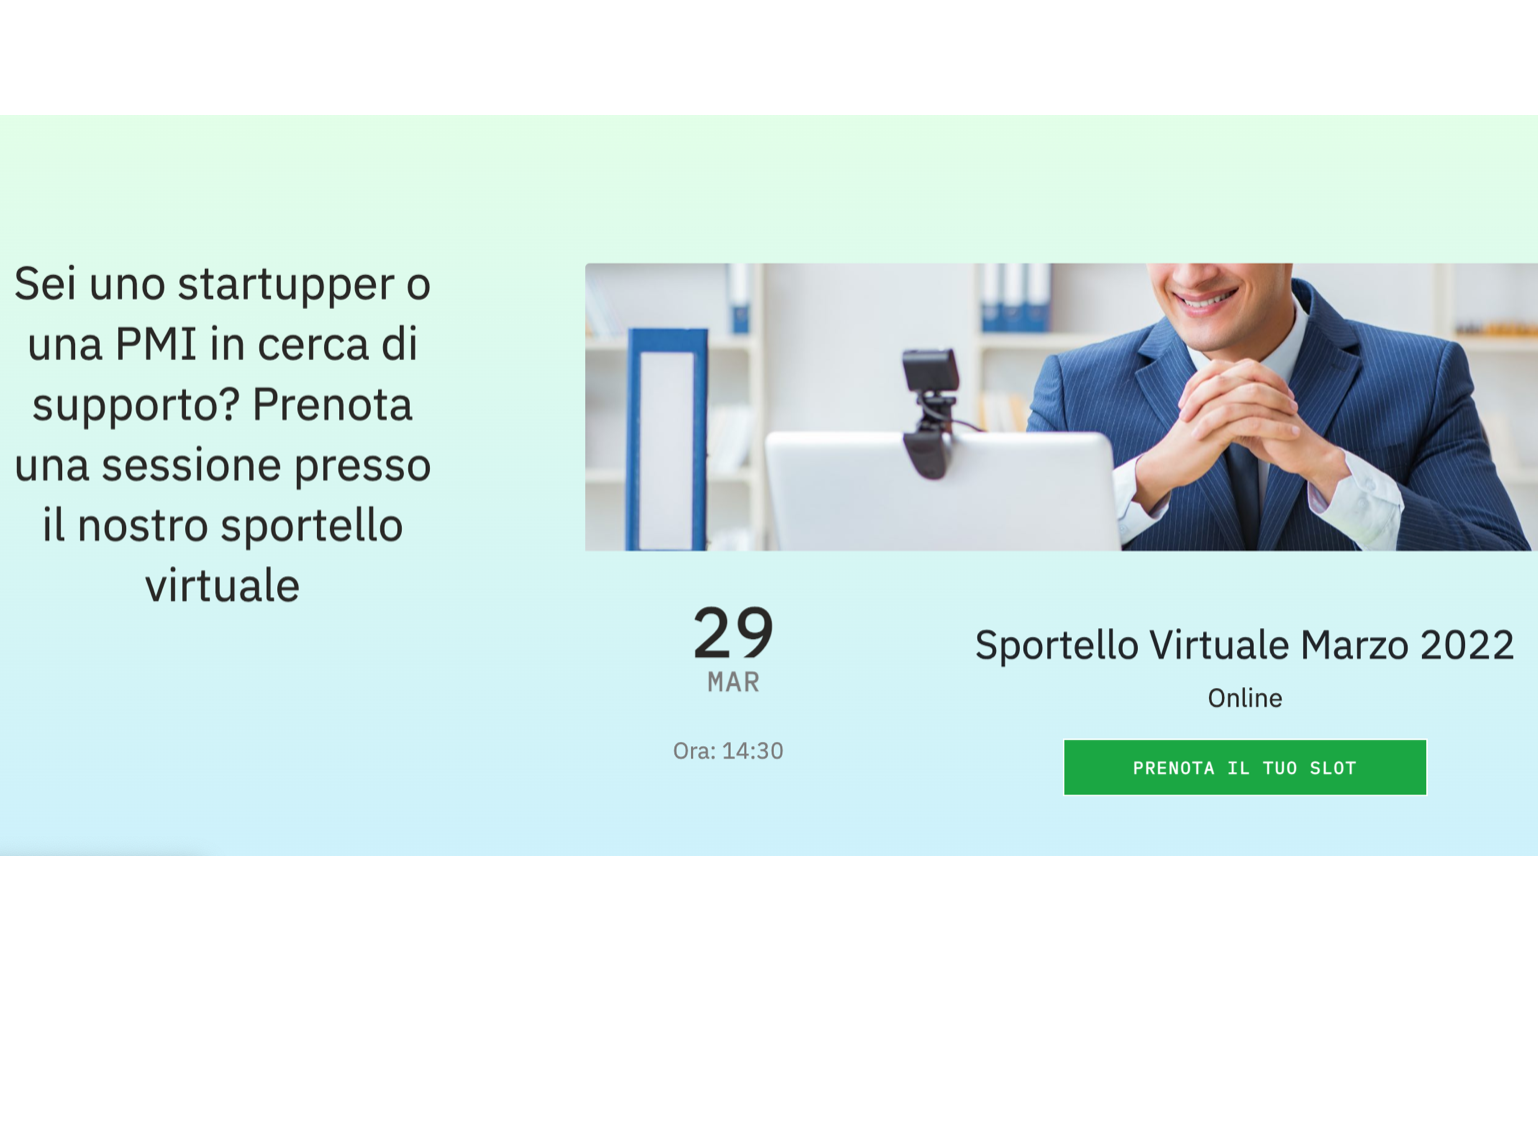 Sportello Virtuale consulenza e orientamento per startupper e PMI